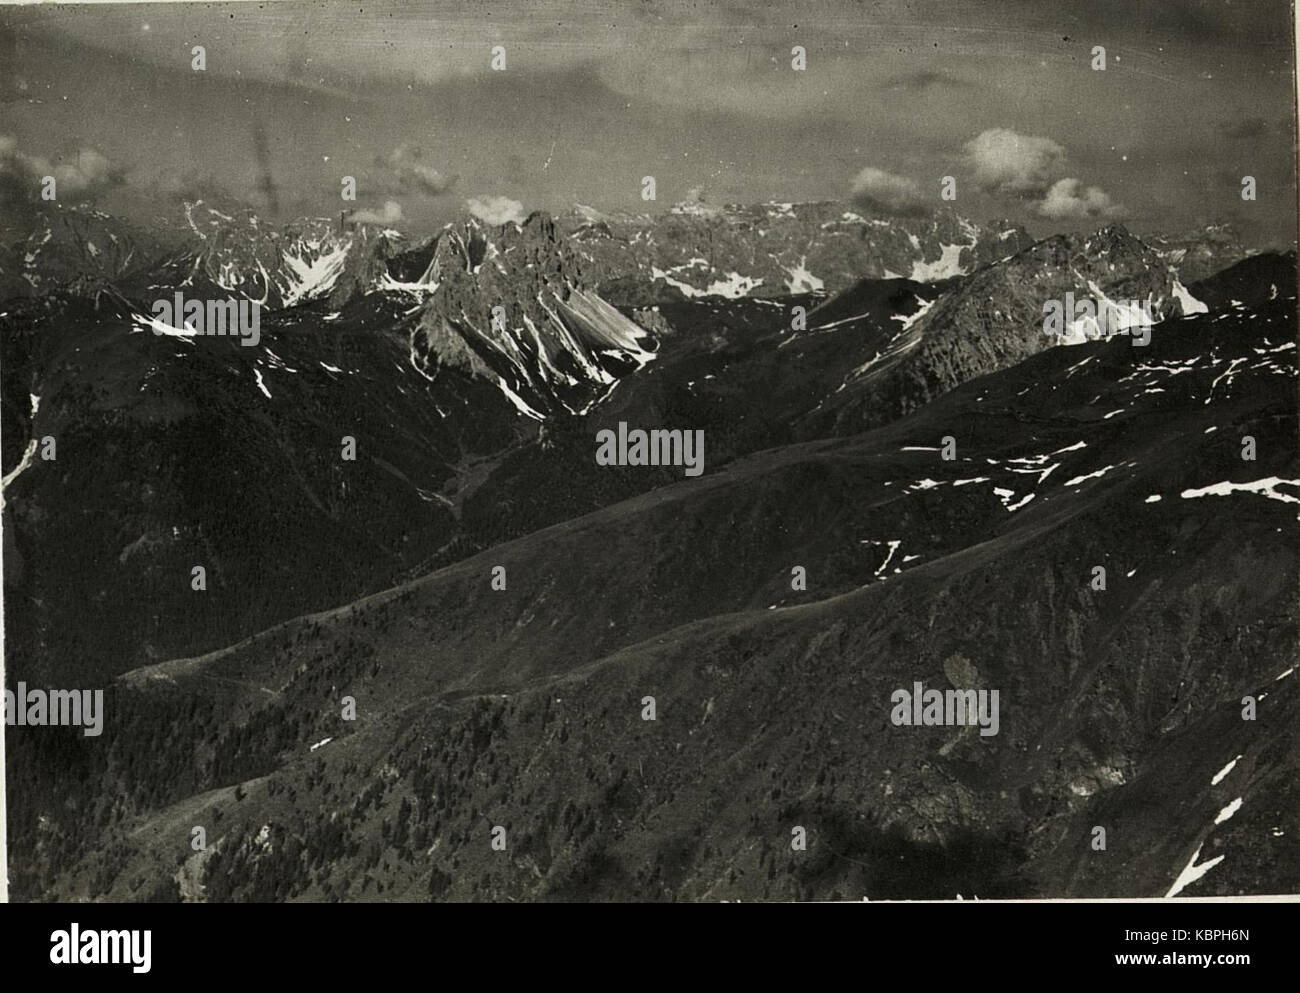 Standpunkt Hochspitze, Panorama vom Monte Peralba bis zum karnischen Kamm.. Cima del Longerin, Passo Polombino, Porze  (6. Teilbild zu WK1 ALB15 04095a) (BildID 15420850) Stock Photo